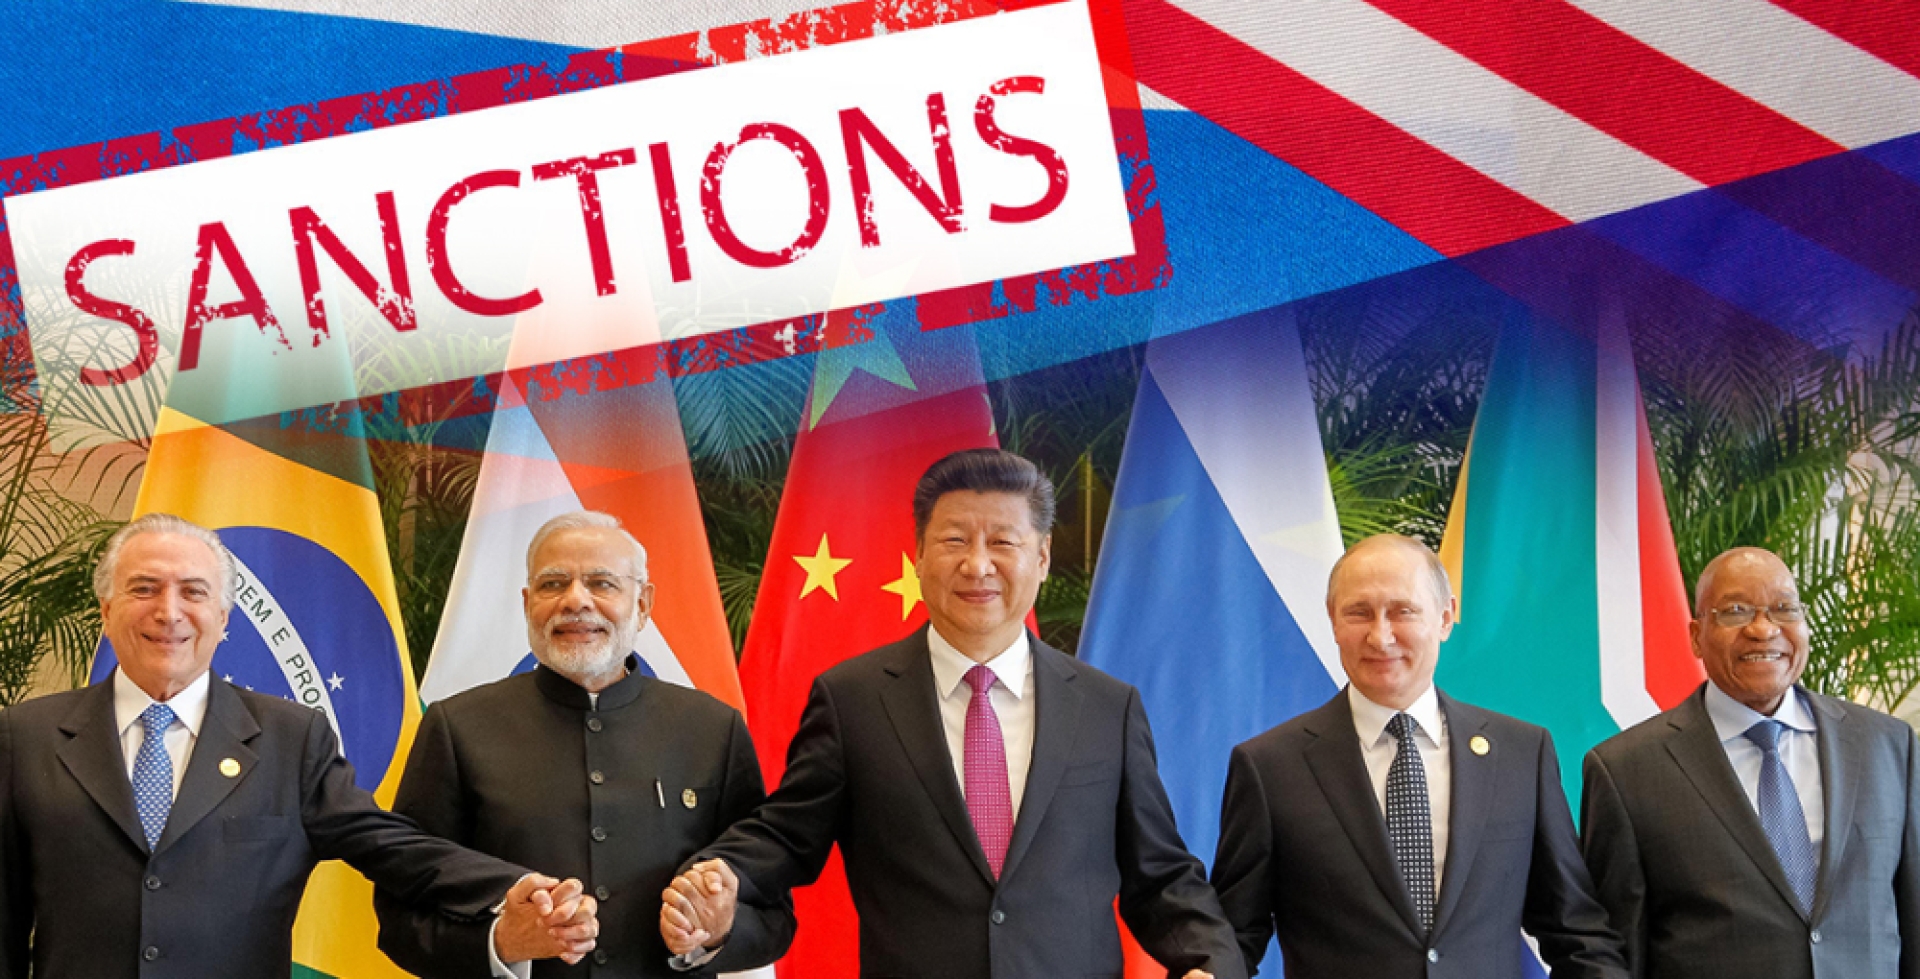 West "helps" BRICS